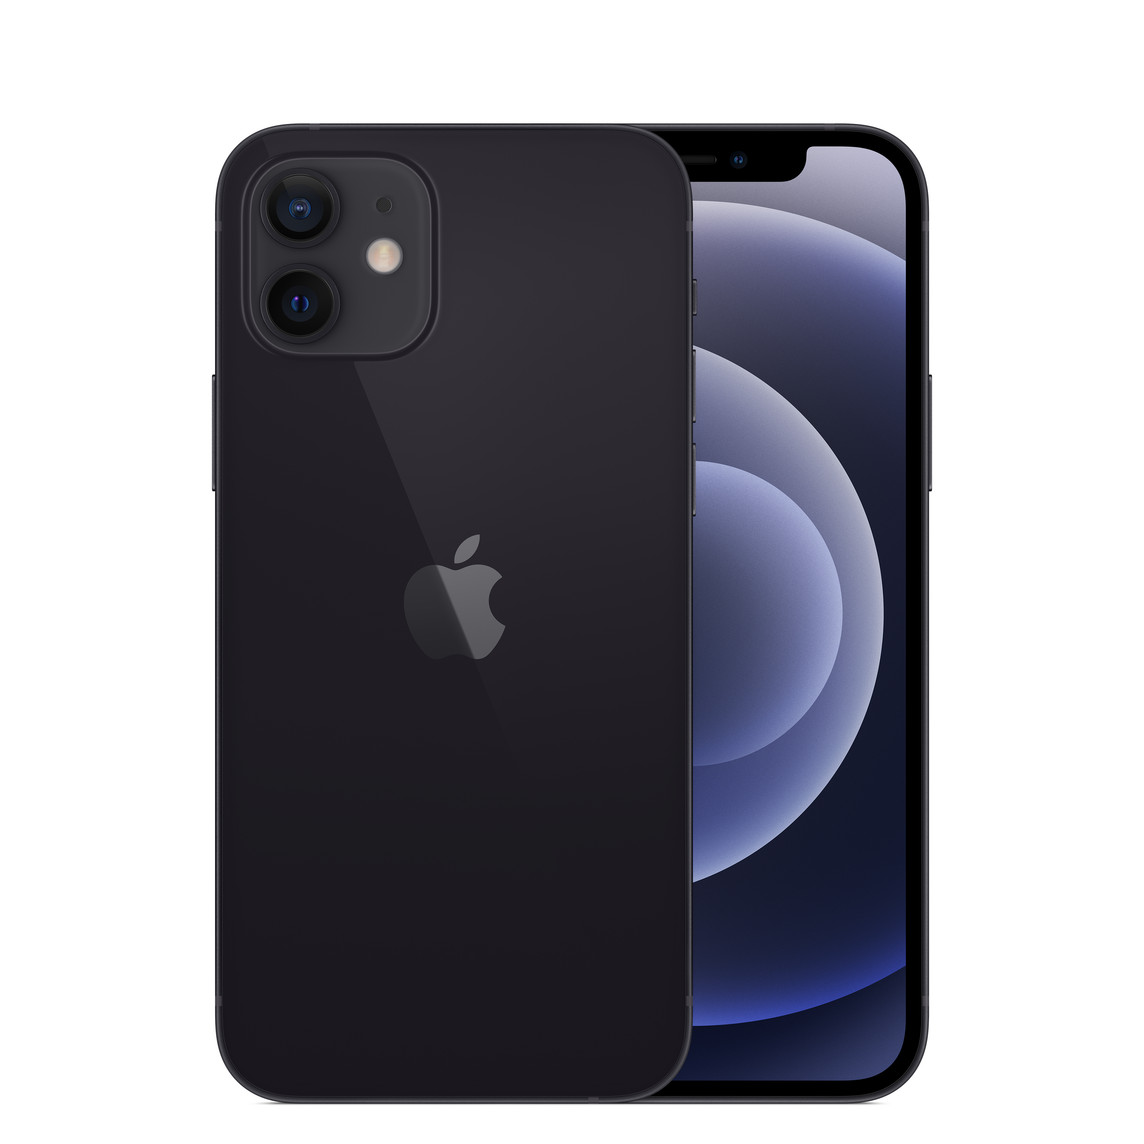 iPhone 12 in Schwarz, Zwei-Kamera-System mit True Tone Blitz, Mikrofon, Apple Logo in der Mitte, Vorderseite, All-Screen Display